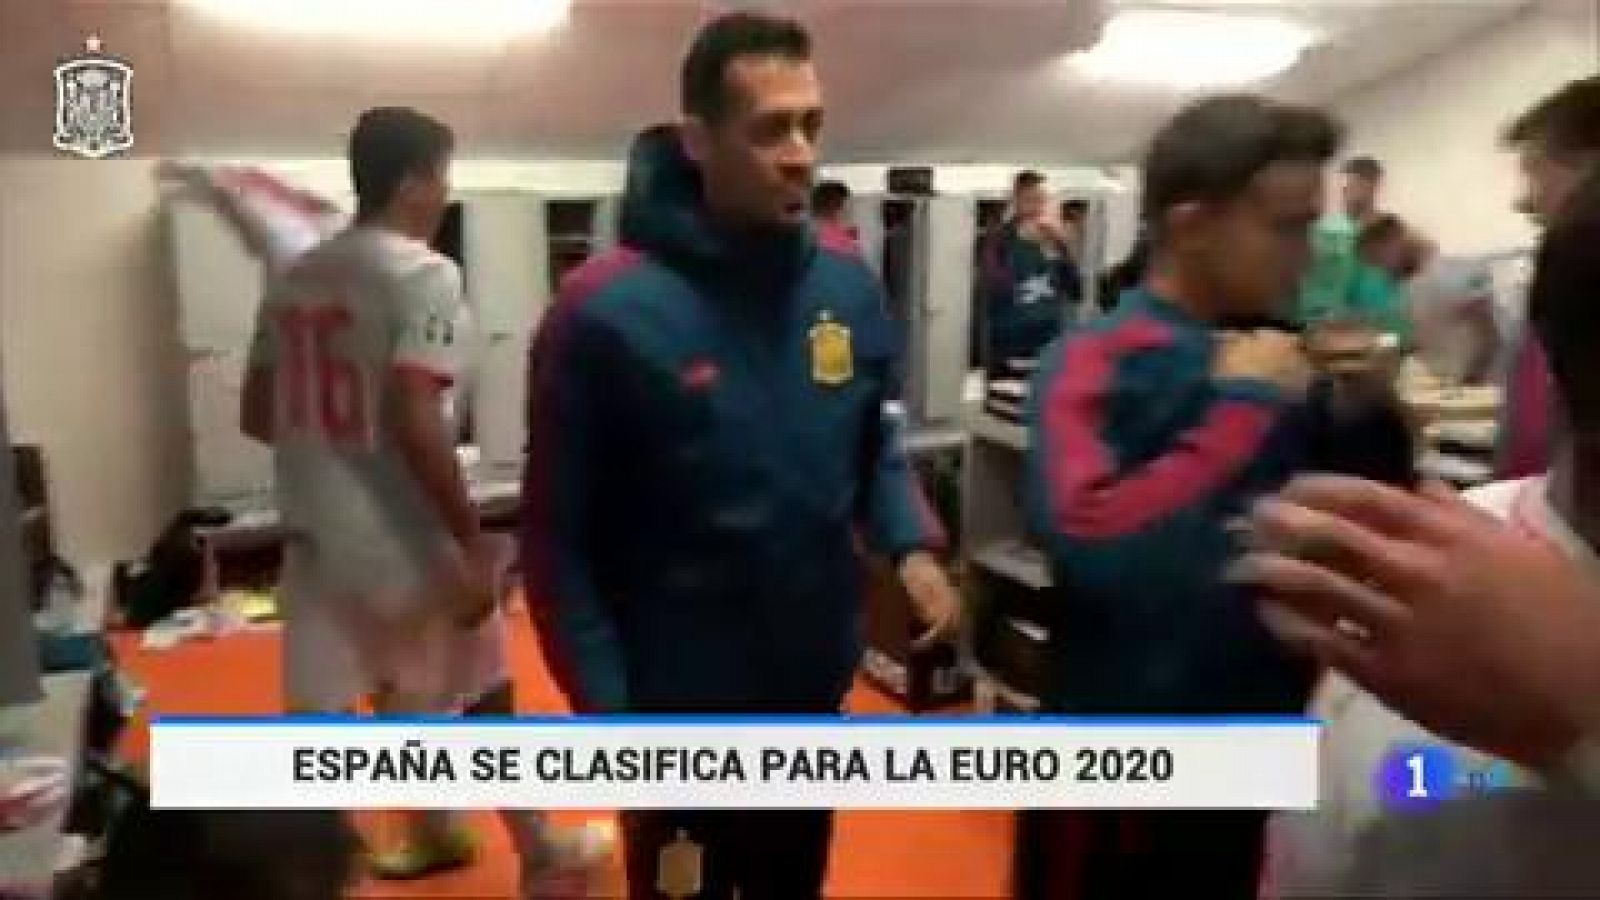 La selección española ya está en la fase final de la Eurocopa 2020. El empate ante Suecia (1-1) ha certificado lo que se presumía que tenía que llegar en cualquierda de los partidos restantes.